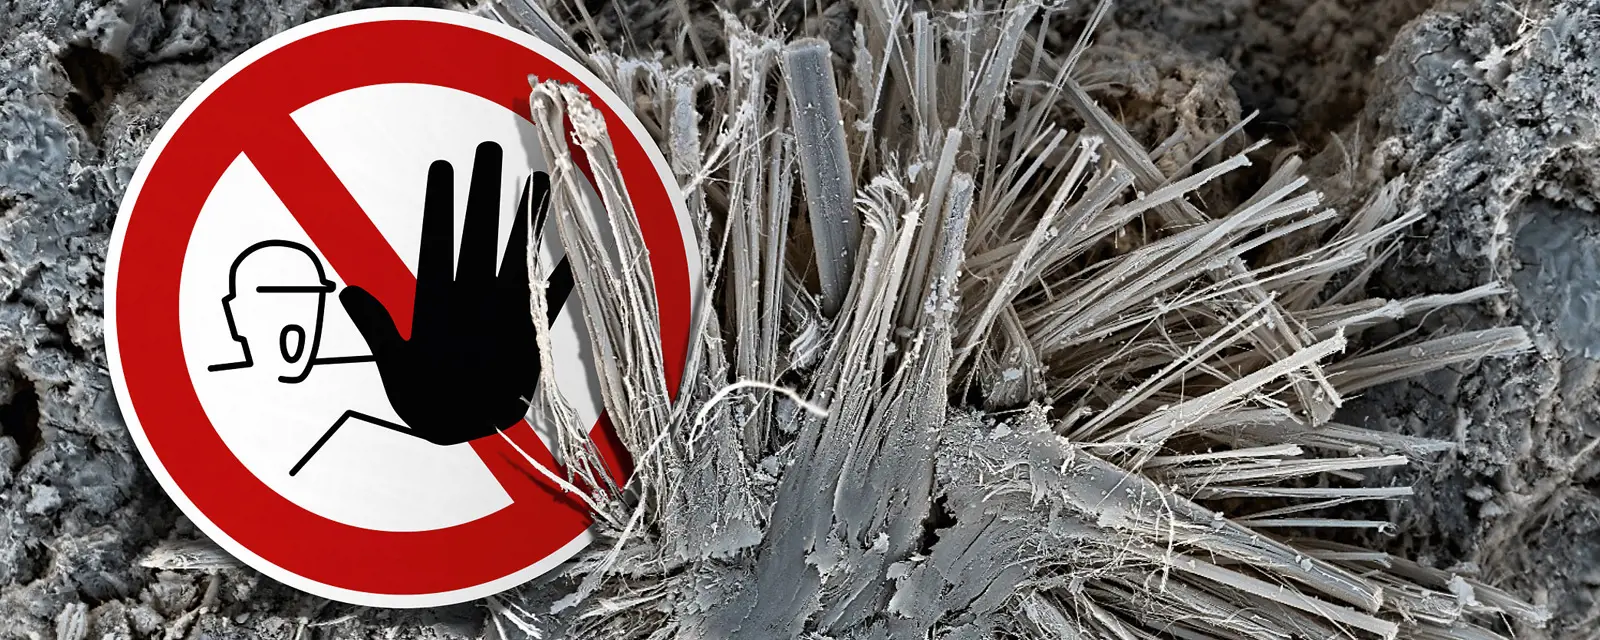 eternit-asbest-entsorgen-gefaehrlich-abfall-service-online